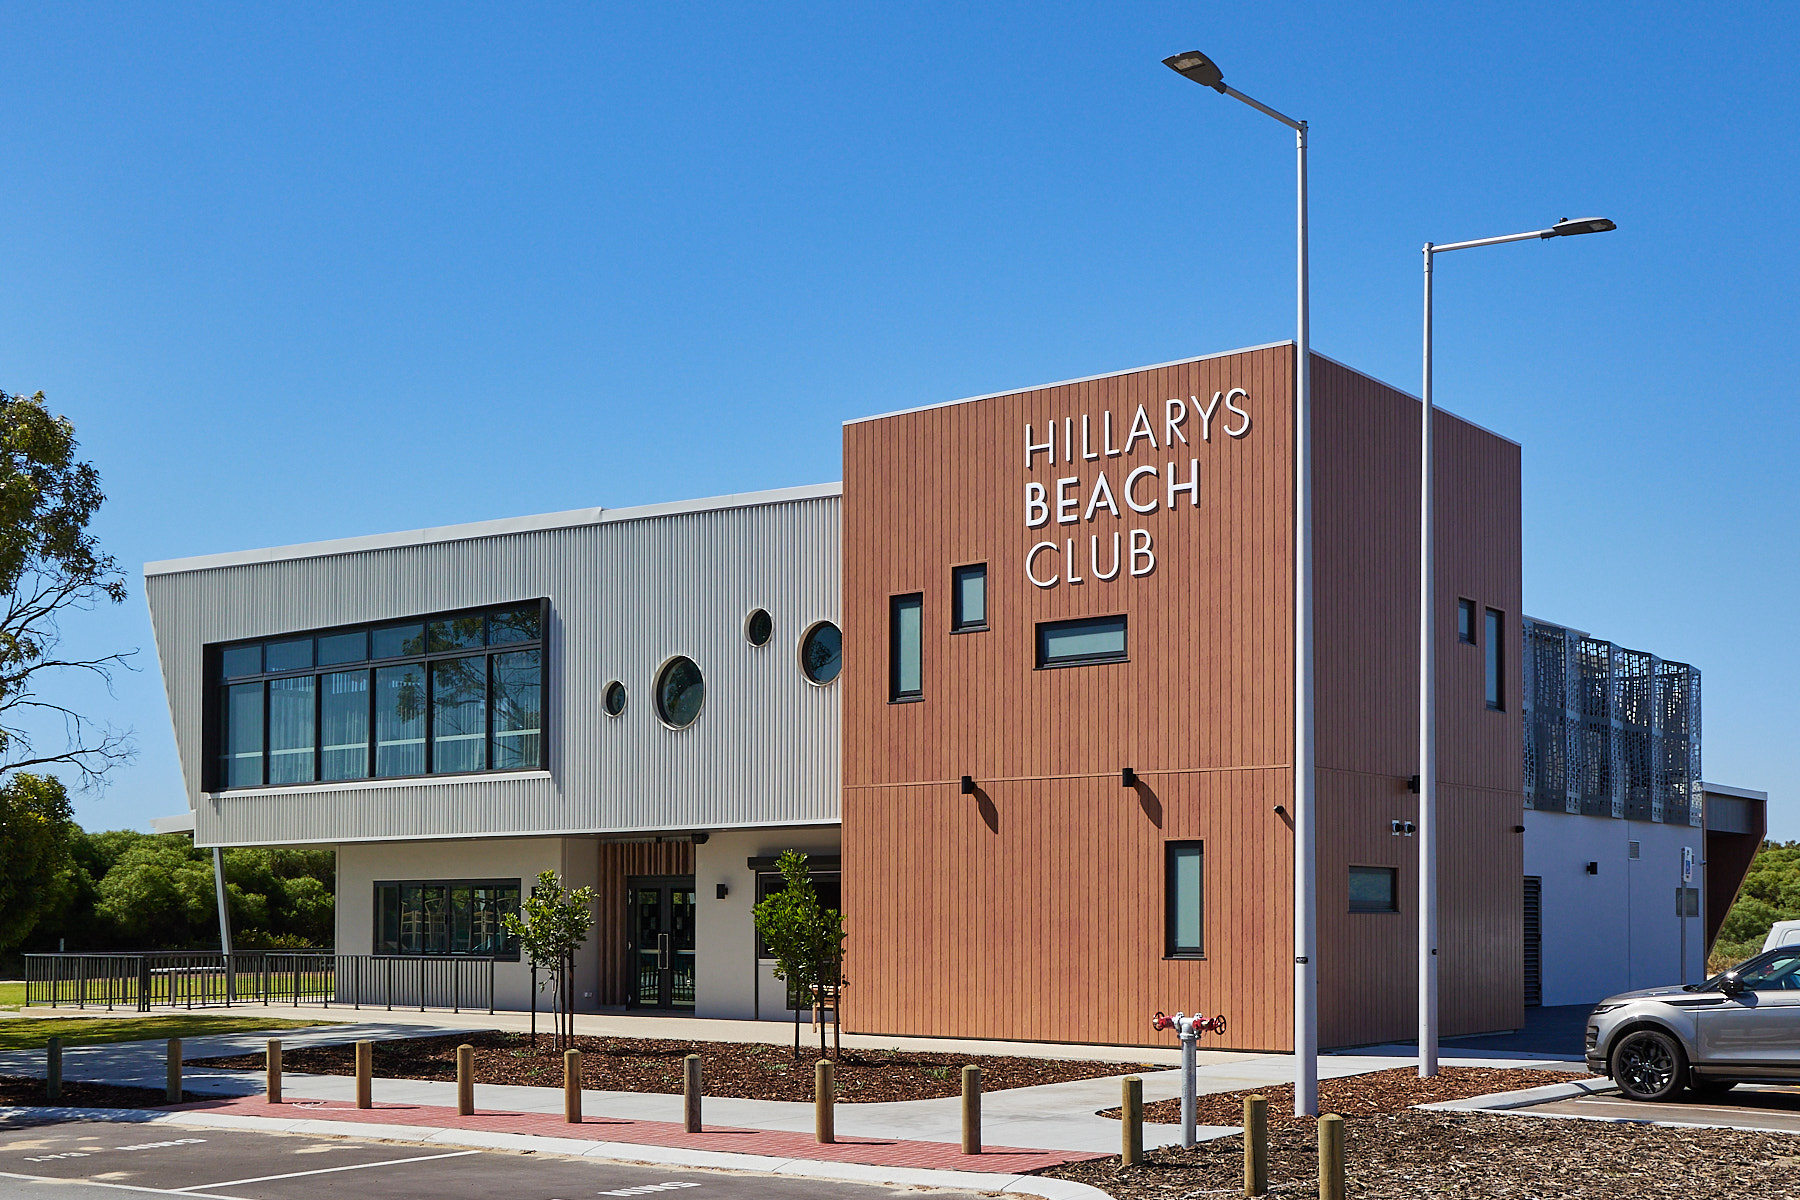 Hillarys Beach Club